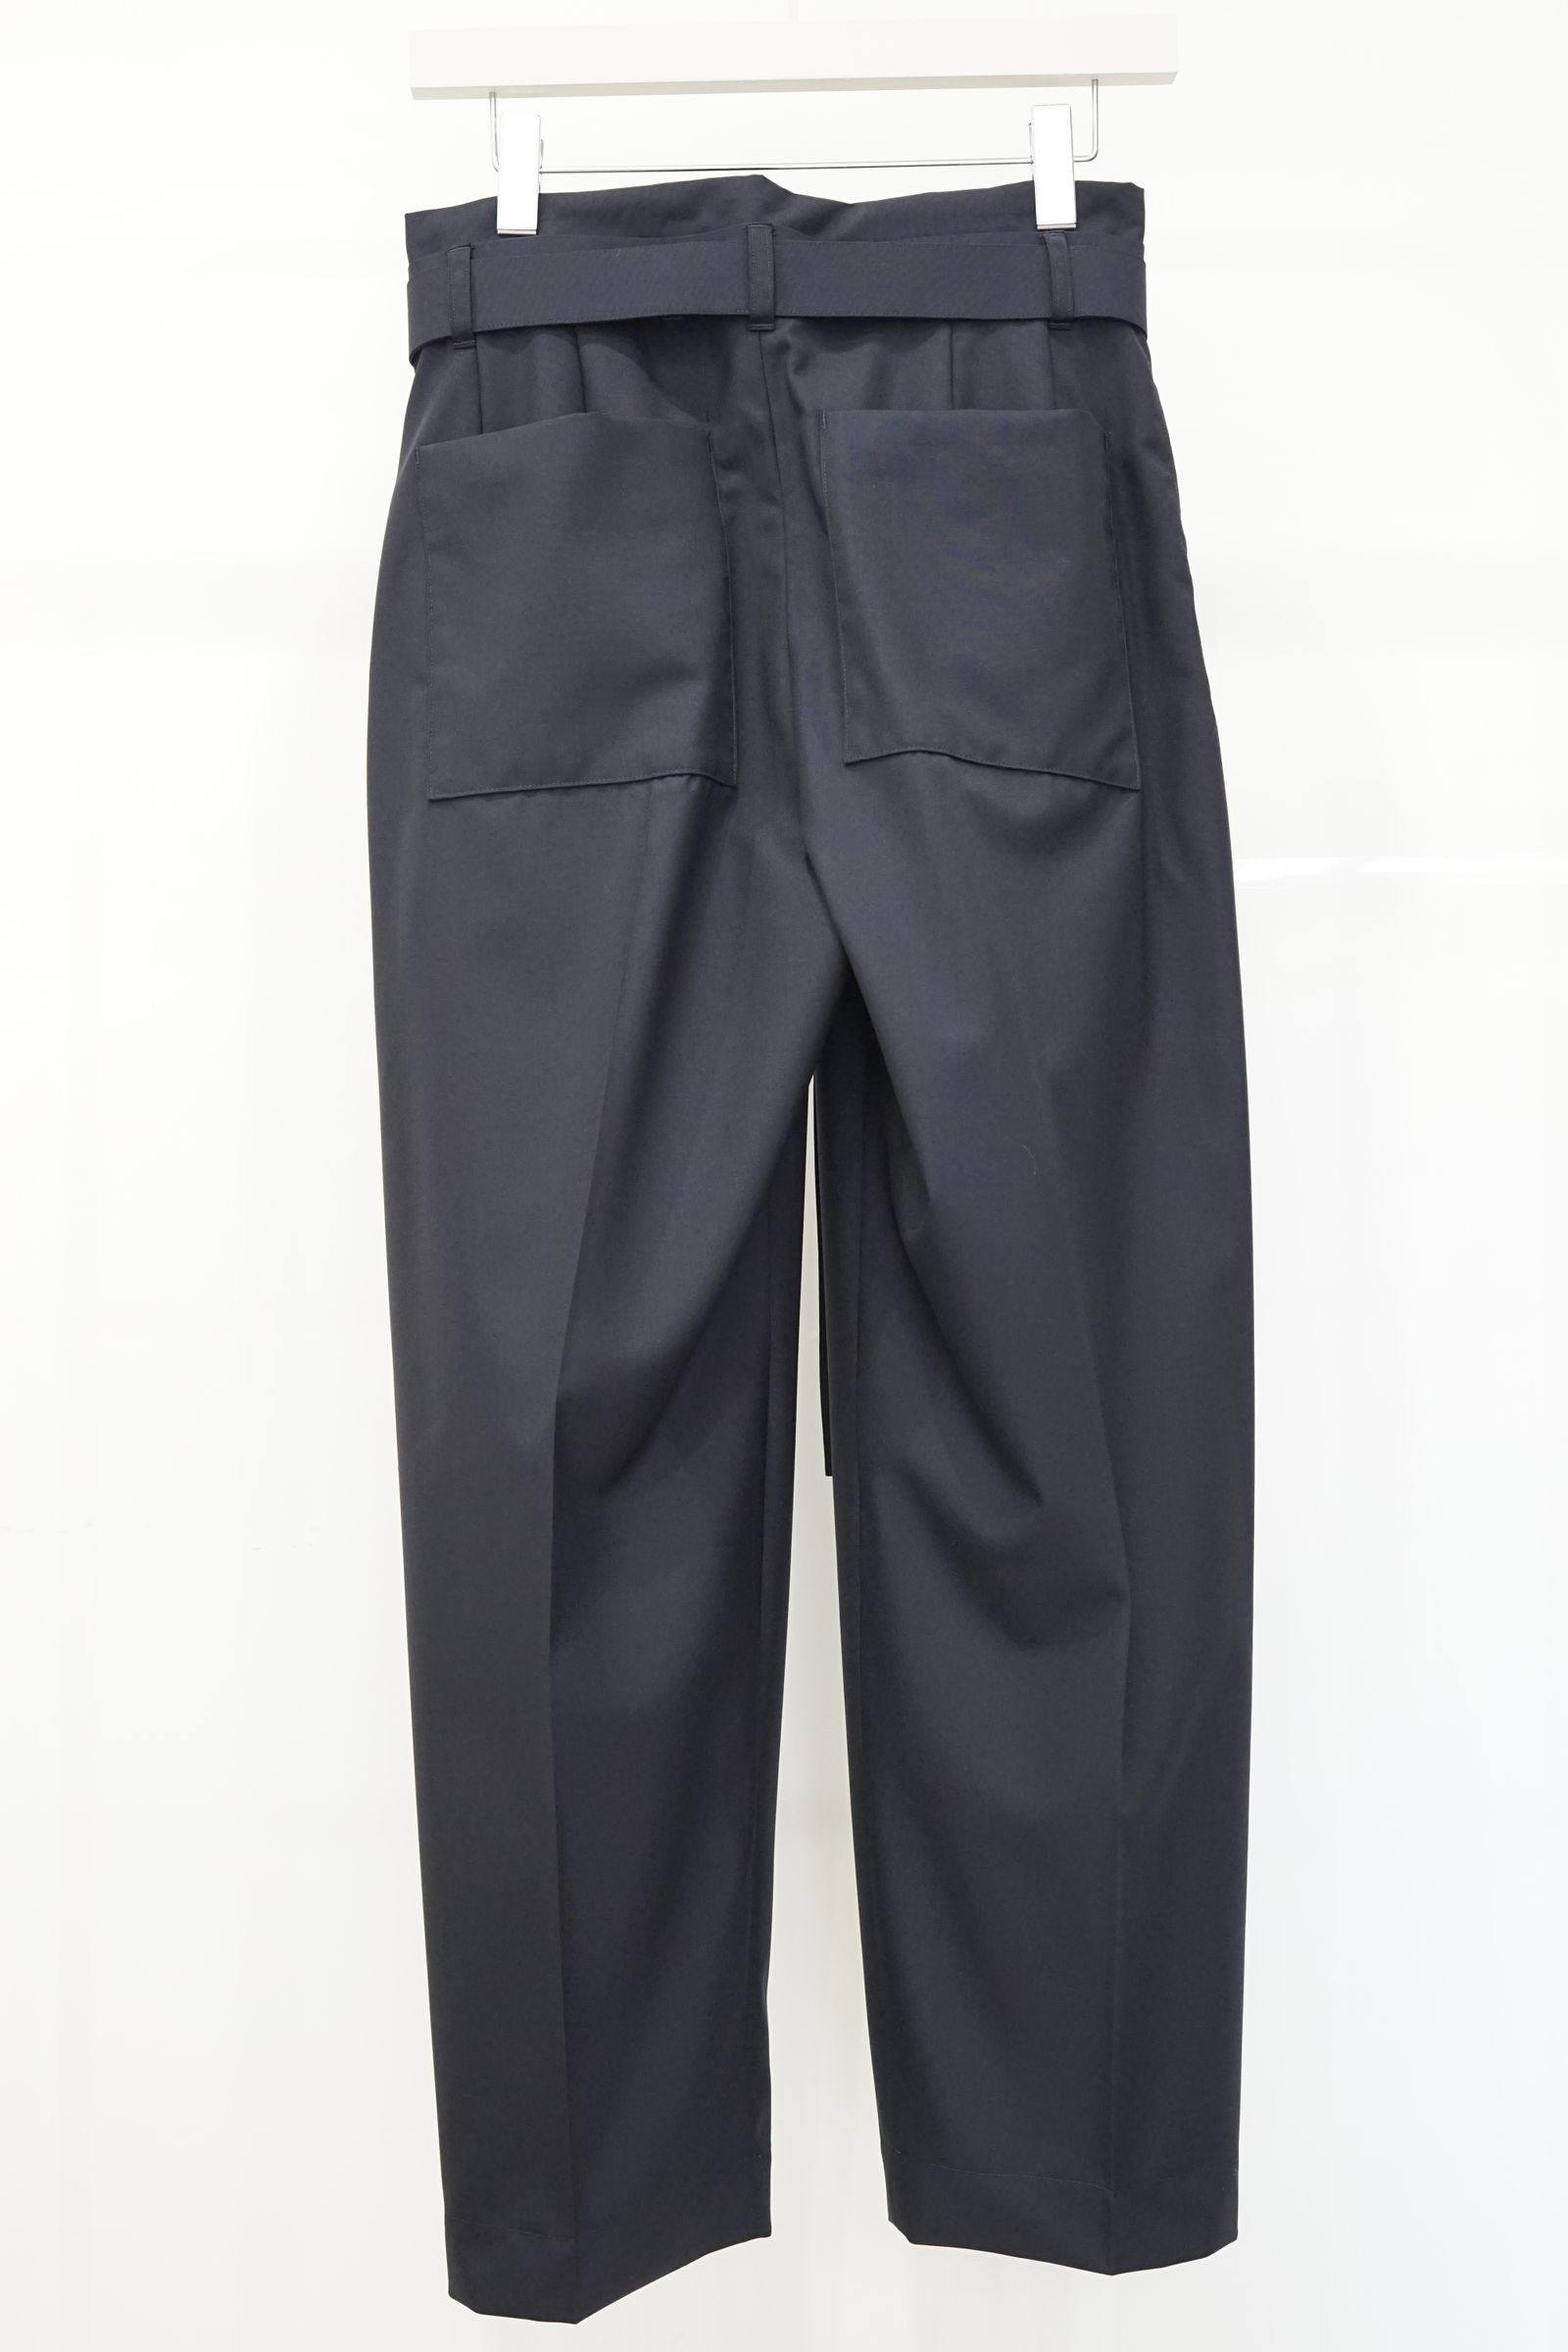 SEEALL - Manchester pants-navy-23ss women | asterisk